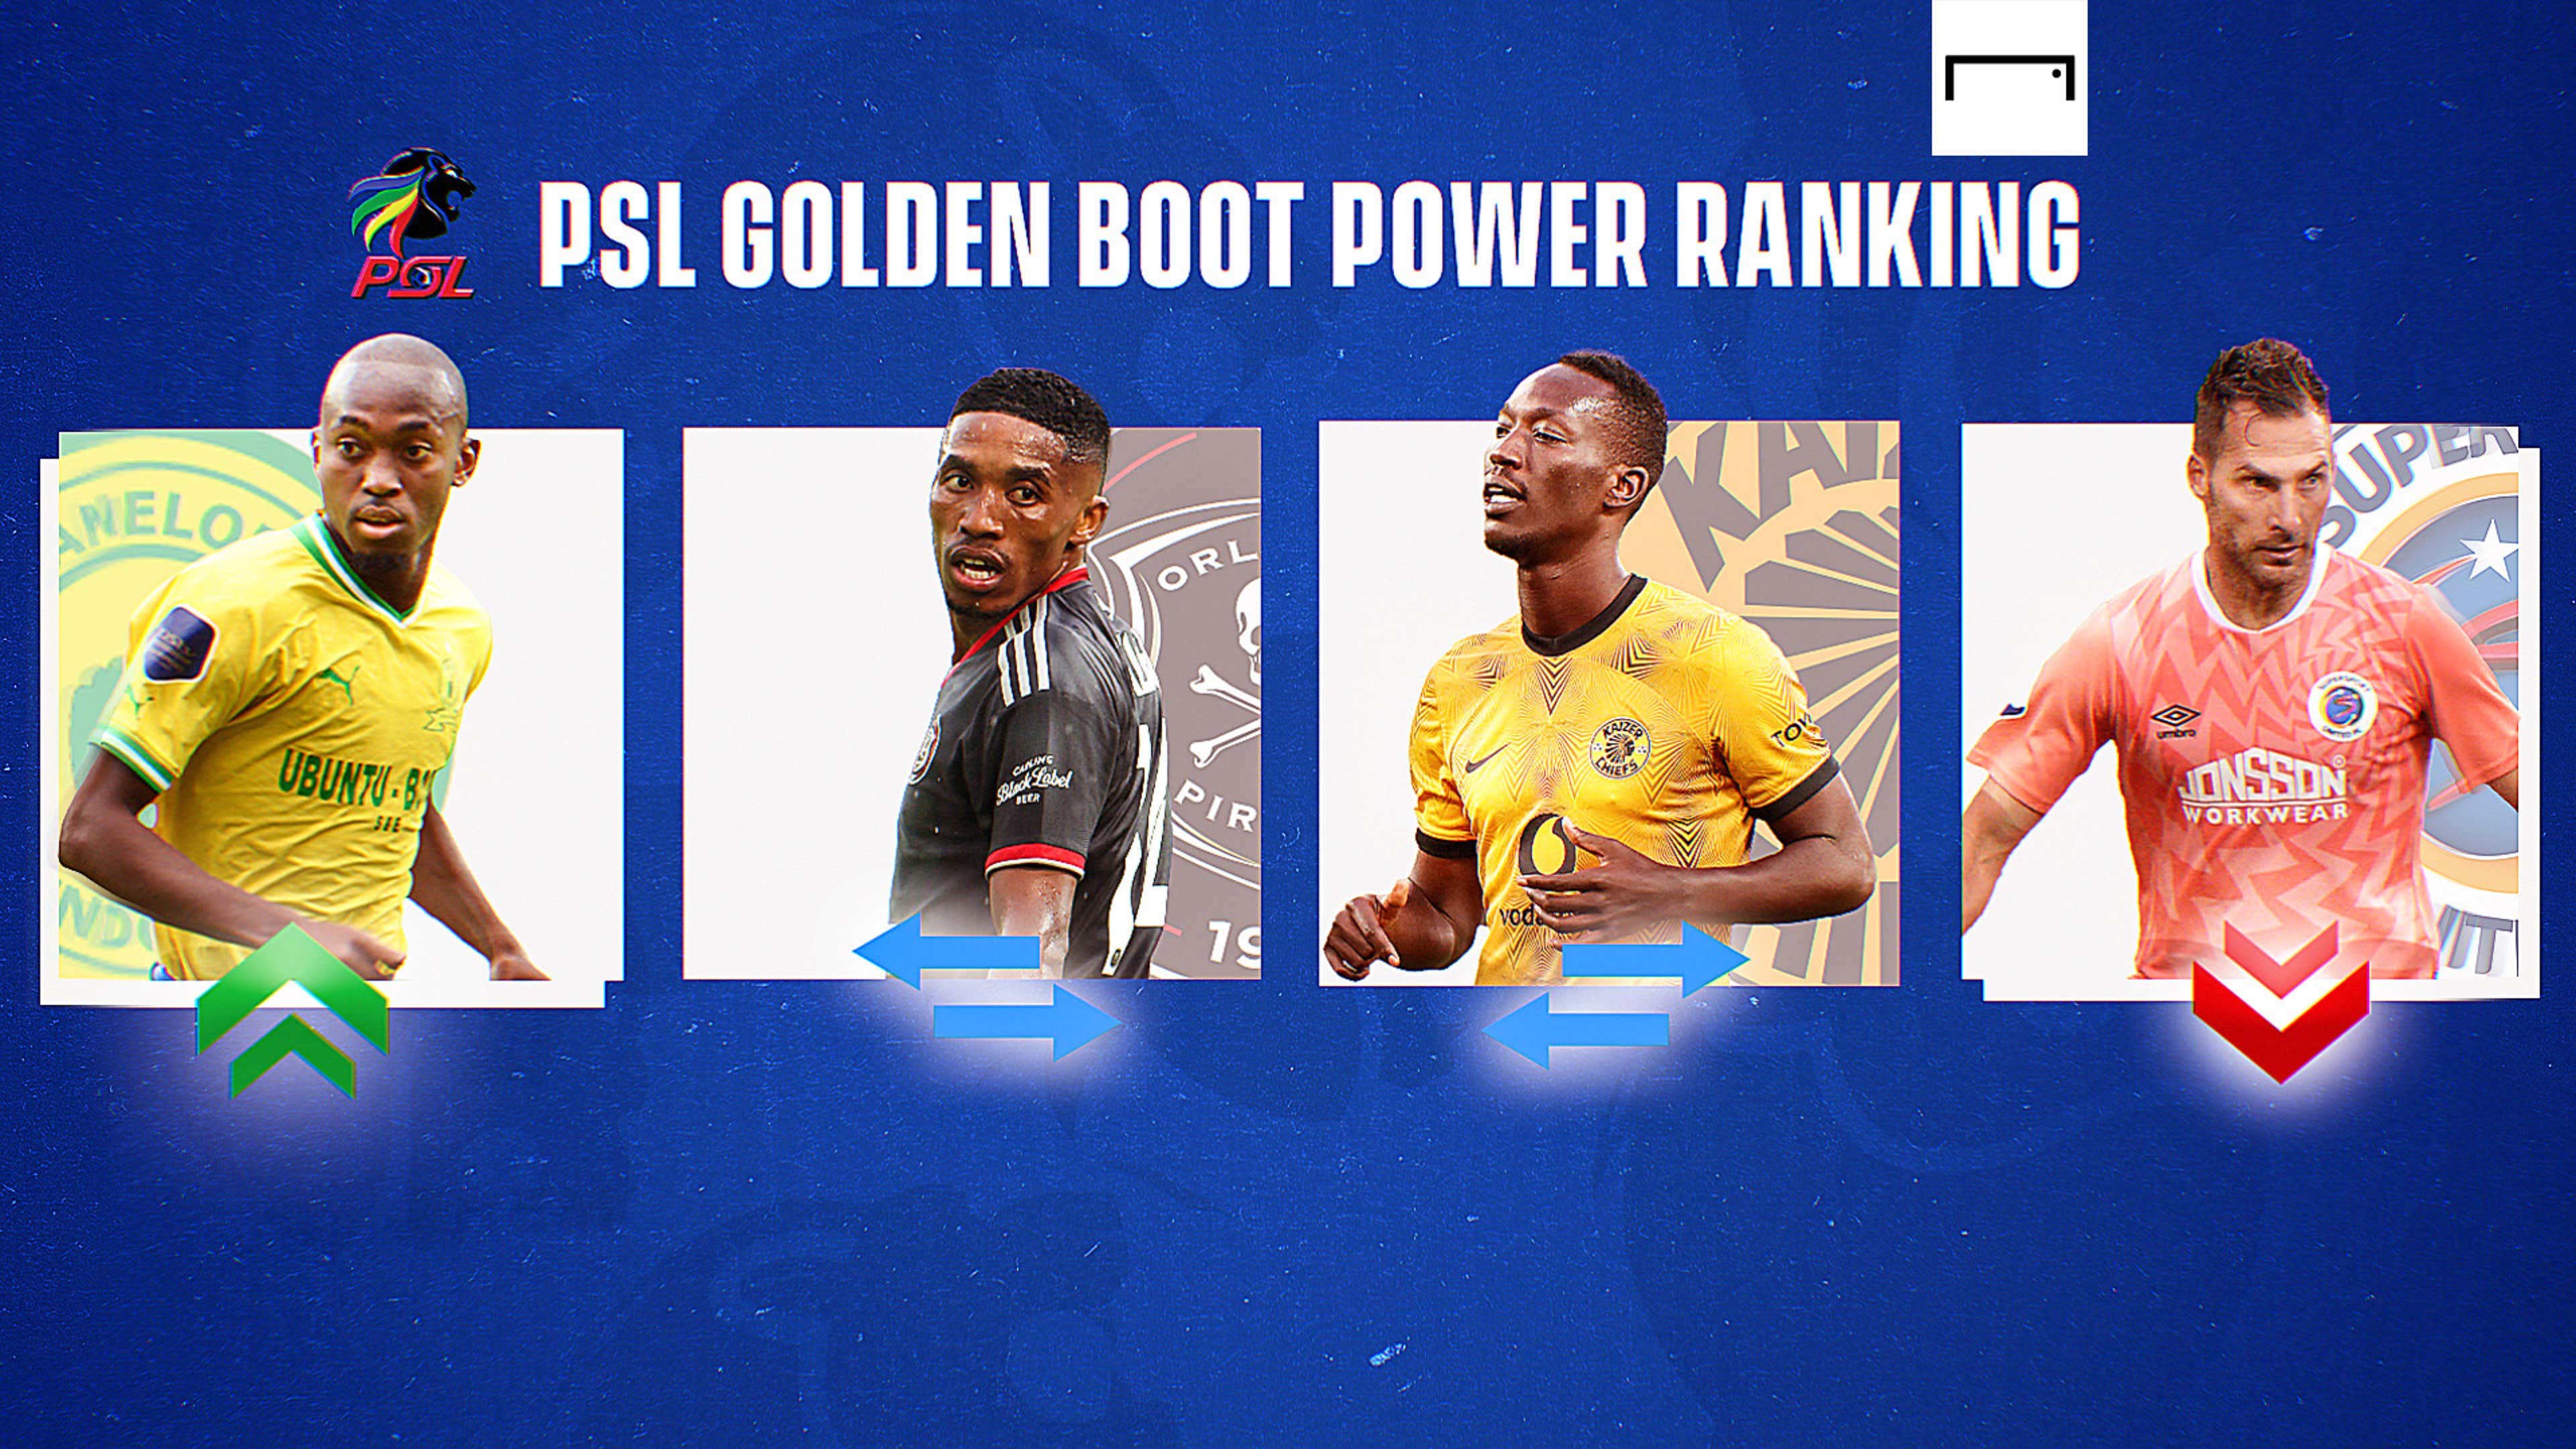 Champions League top goal scorers 2022/23: Final golden boot